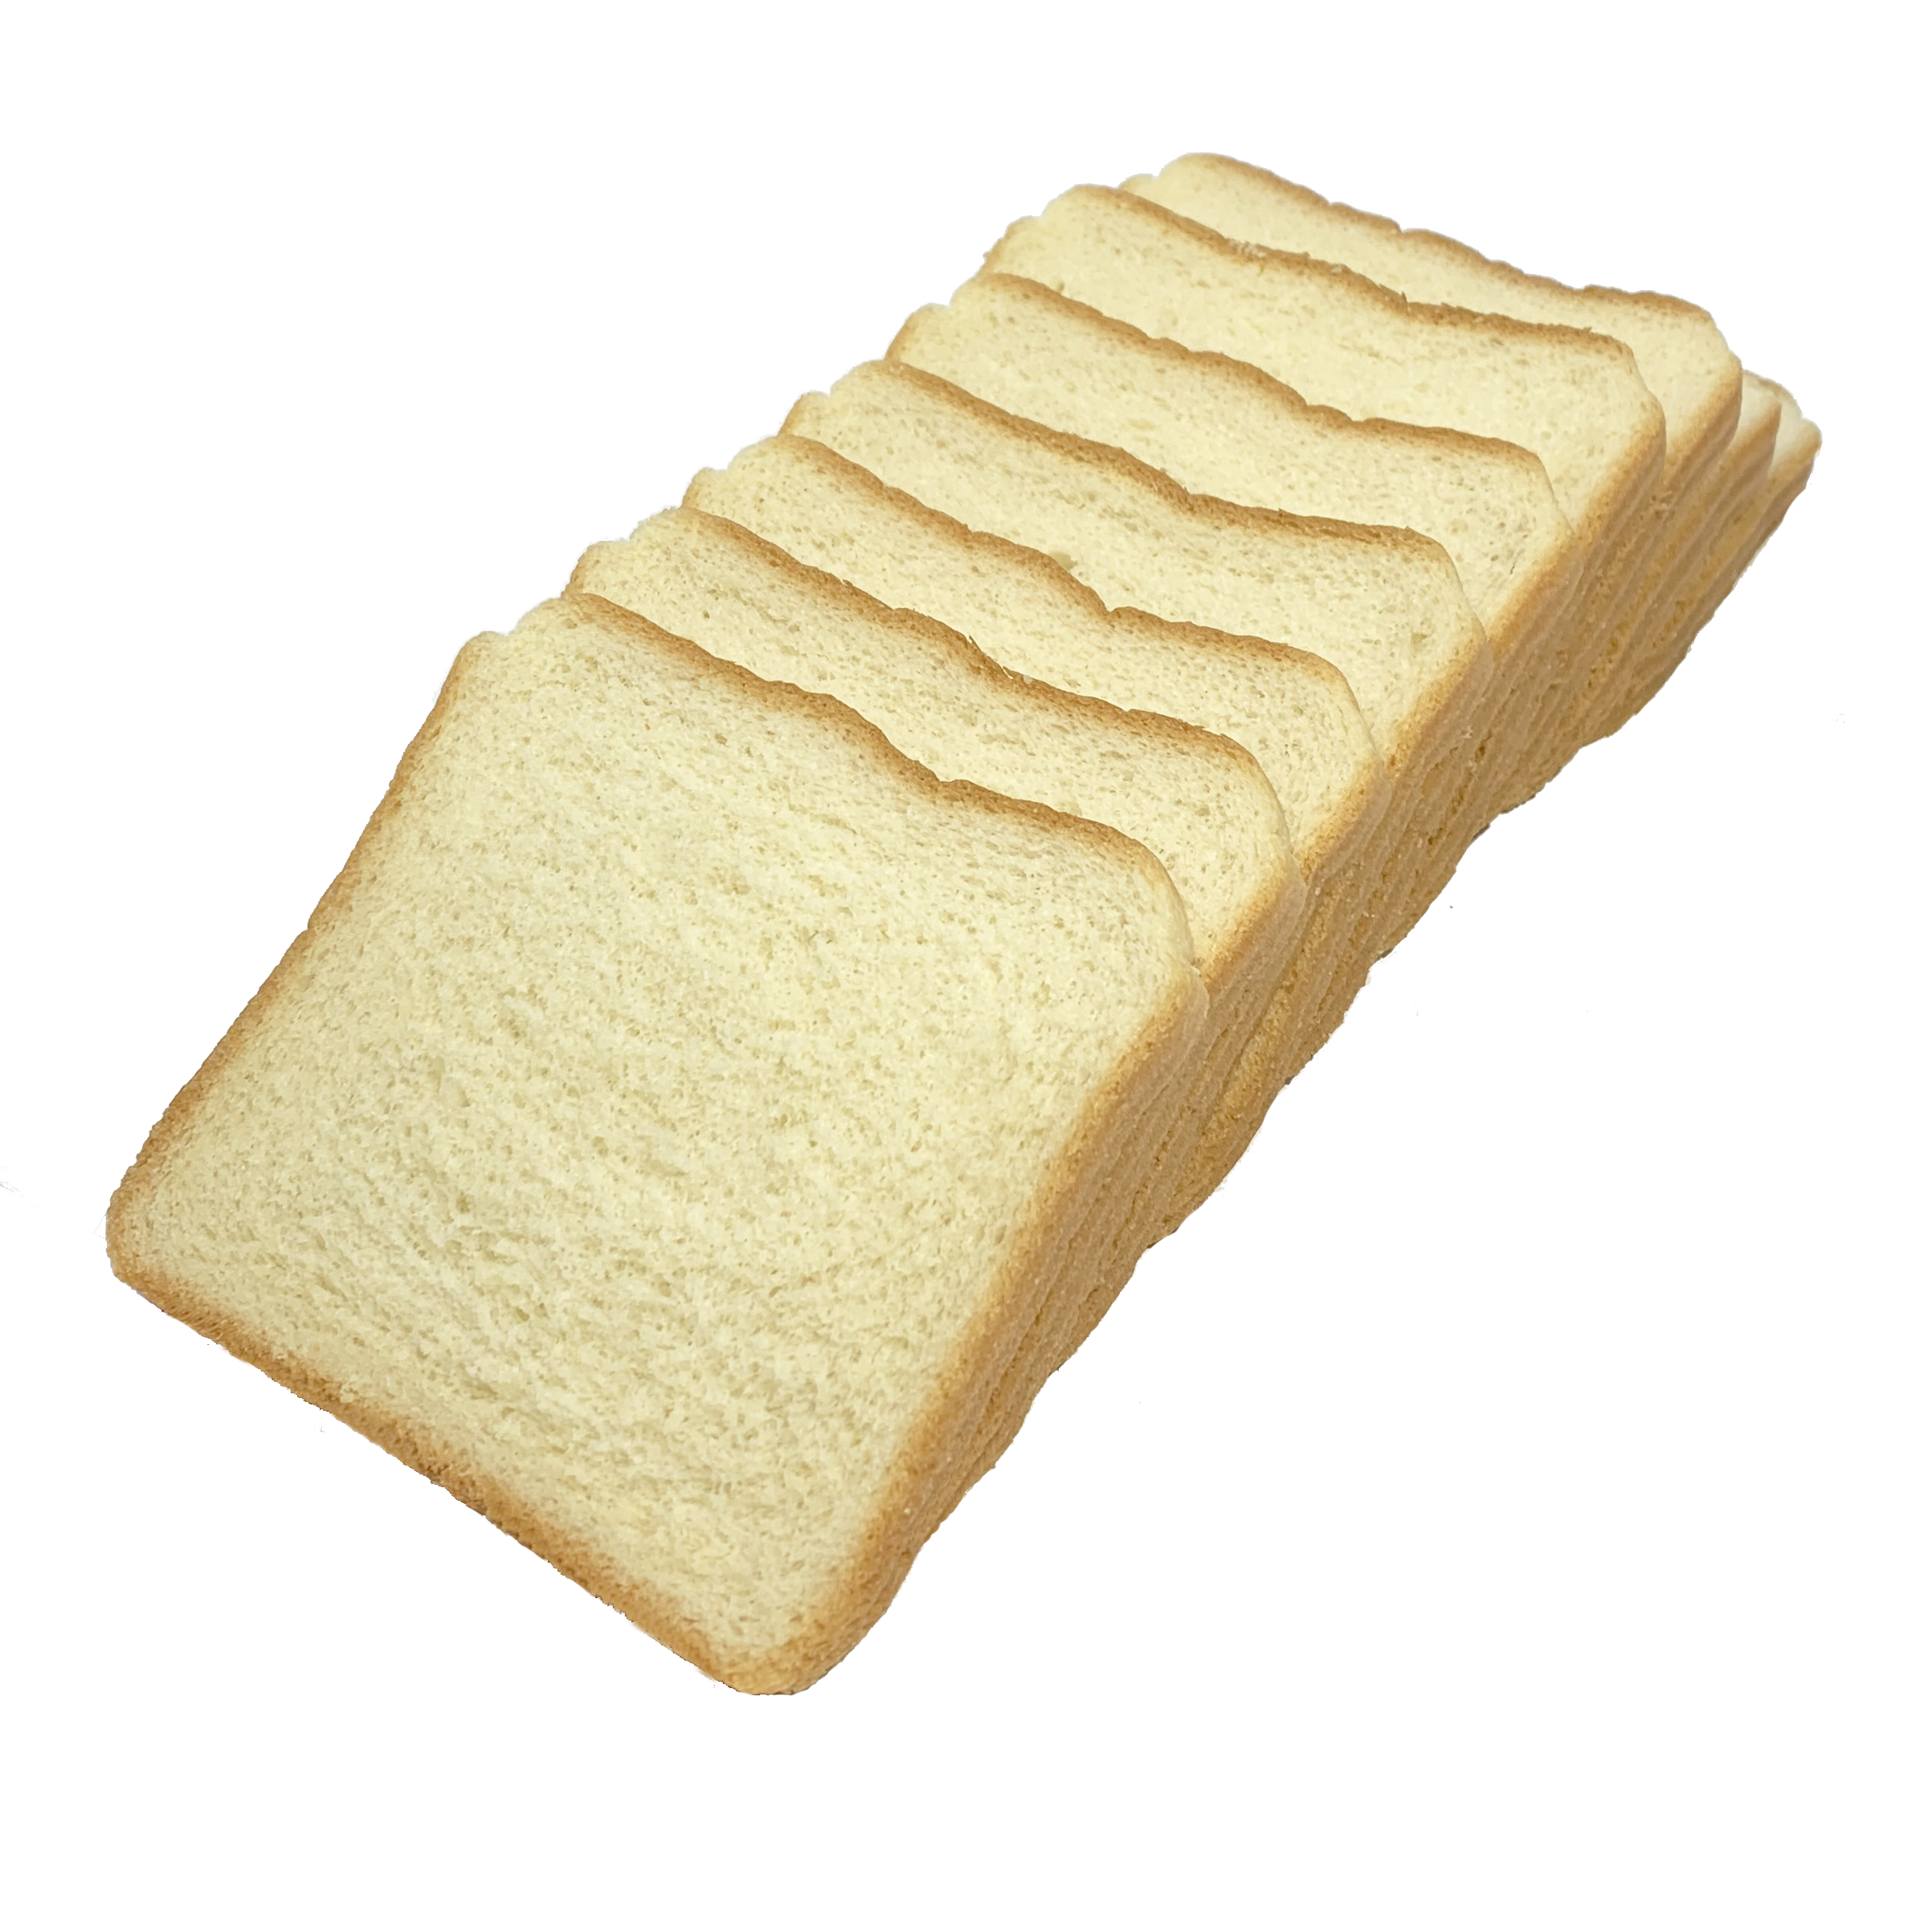 White Bread